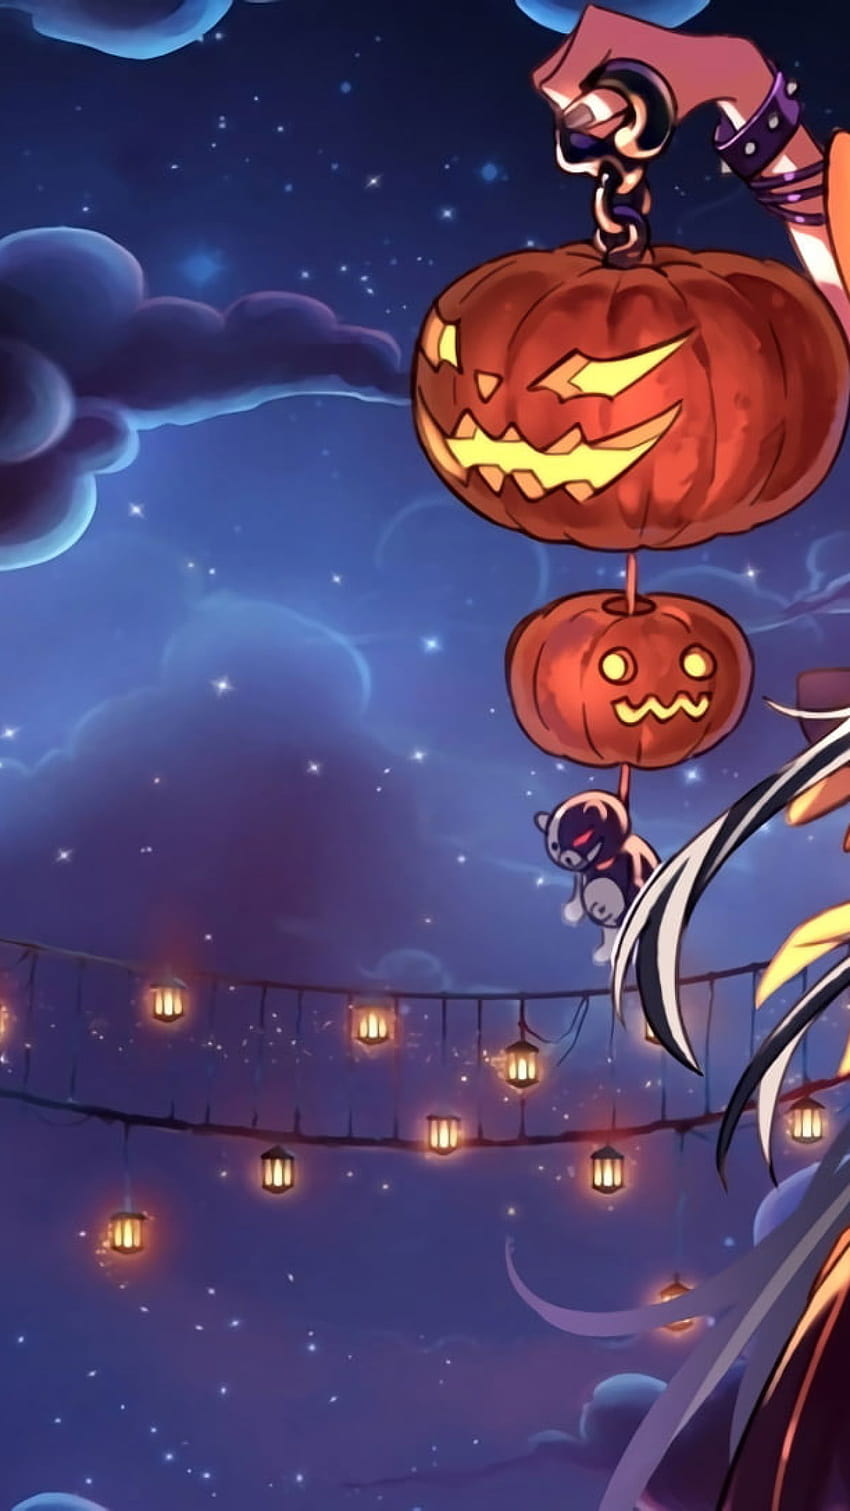 HD wallpaper: Halloween, anime, fan art, Jack O' Lantern, pumpkin, crow,  witch hat | Wallpaper Flare